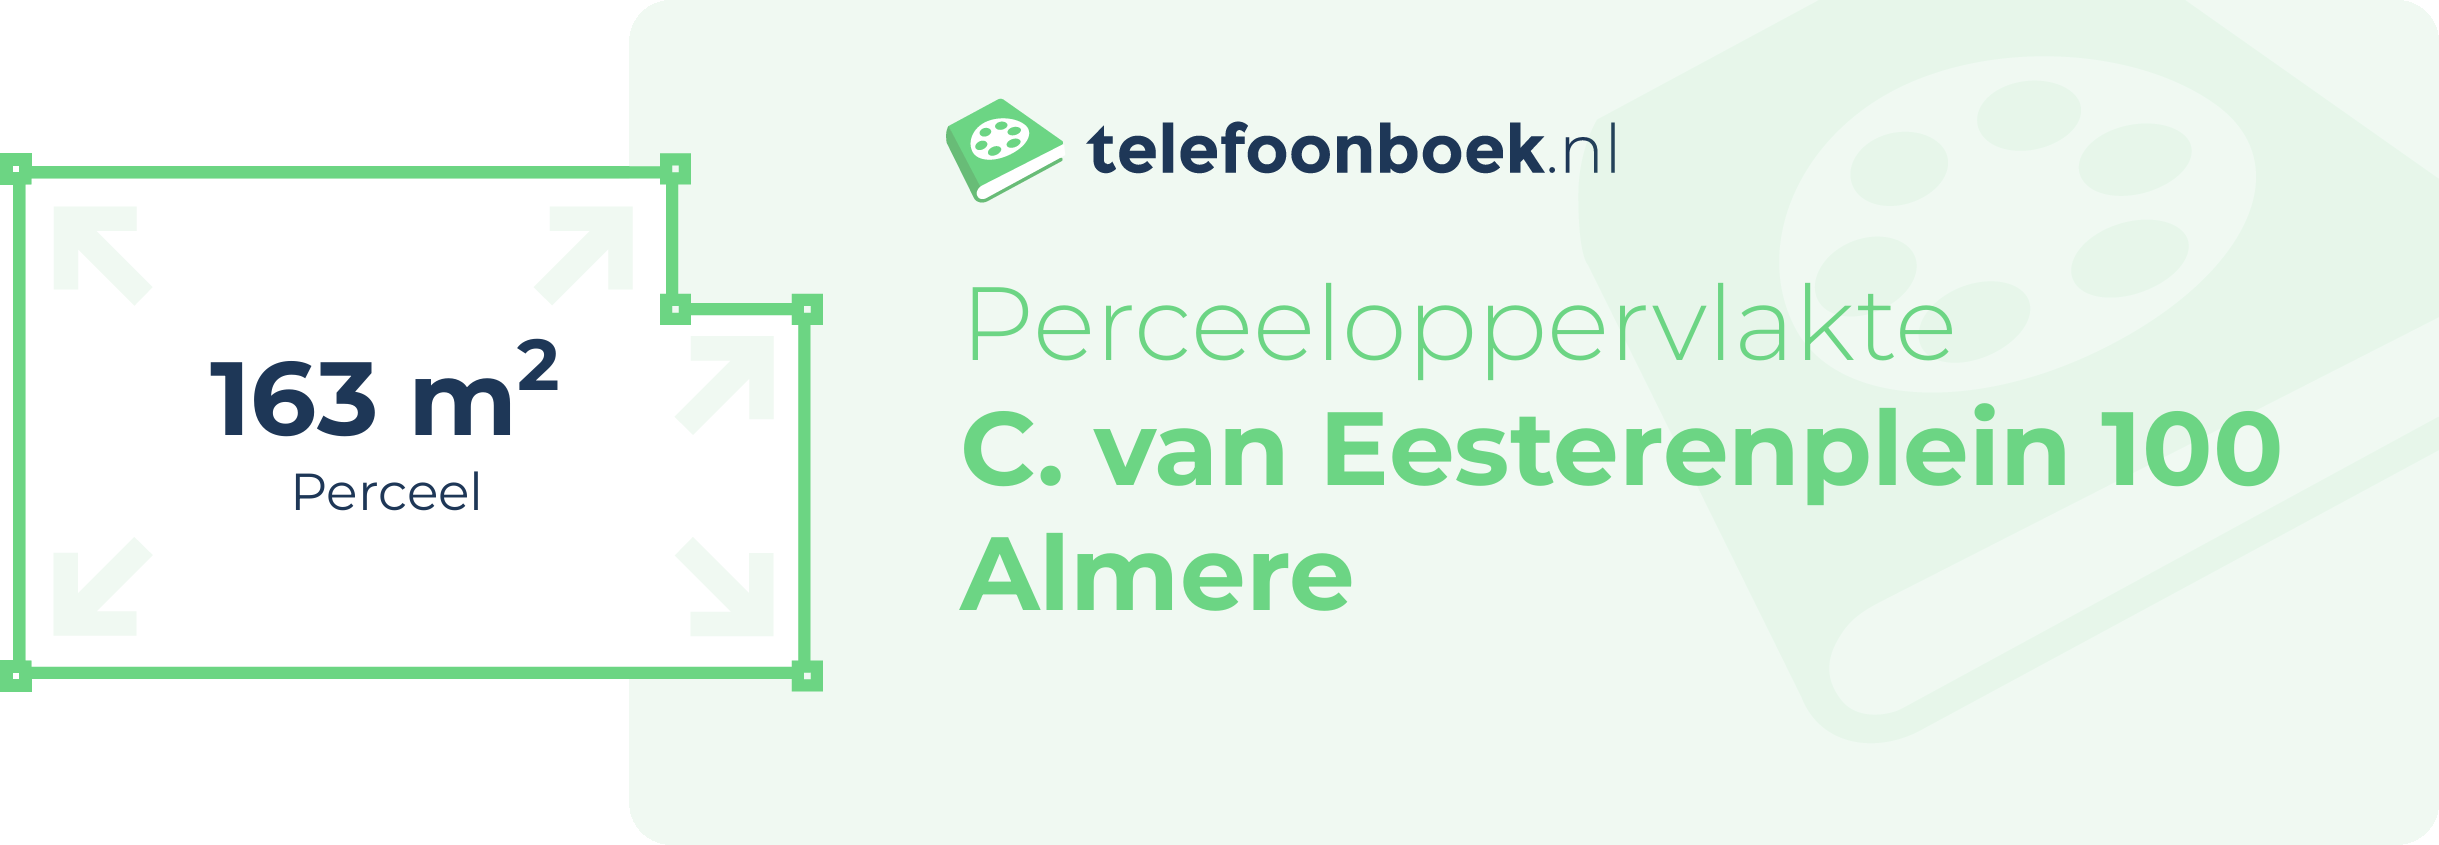 Perceeloppervlakte C. Van Eesterenplein 100 Almere